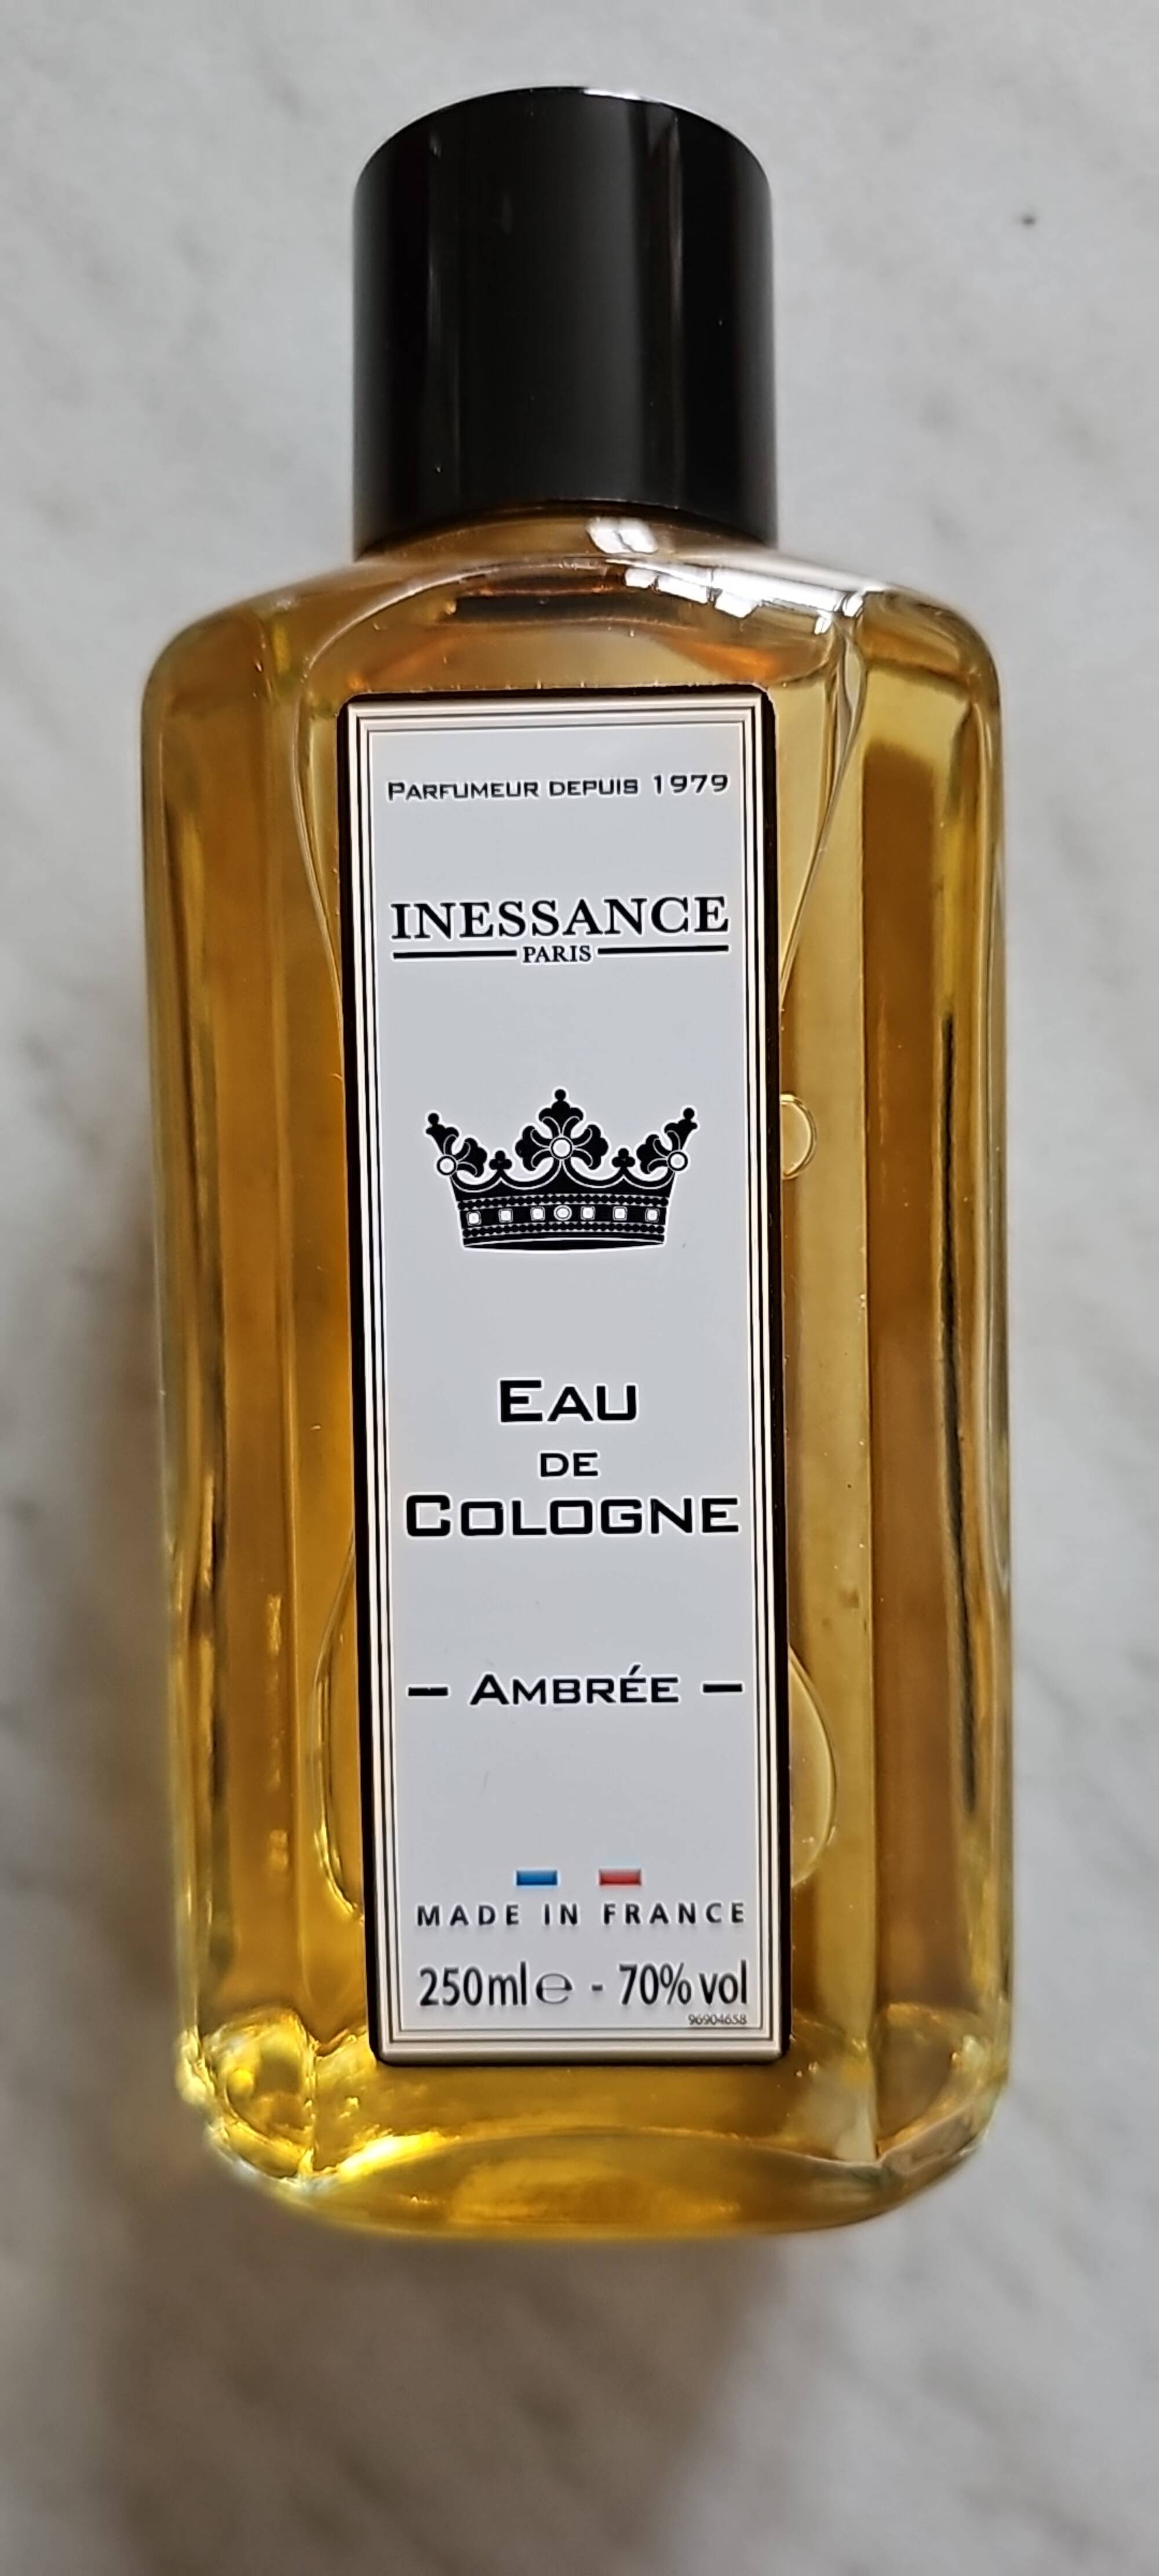 INESSANCE - Eau de cologne - Ambrée